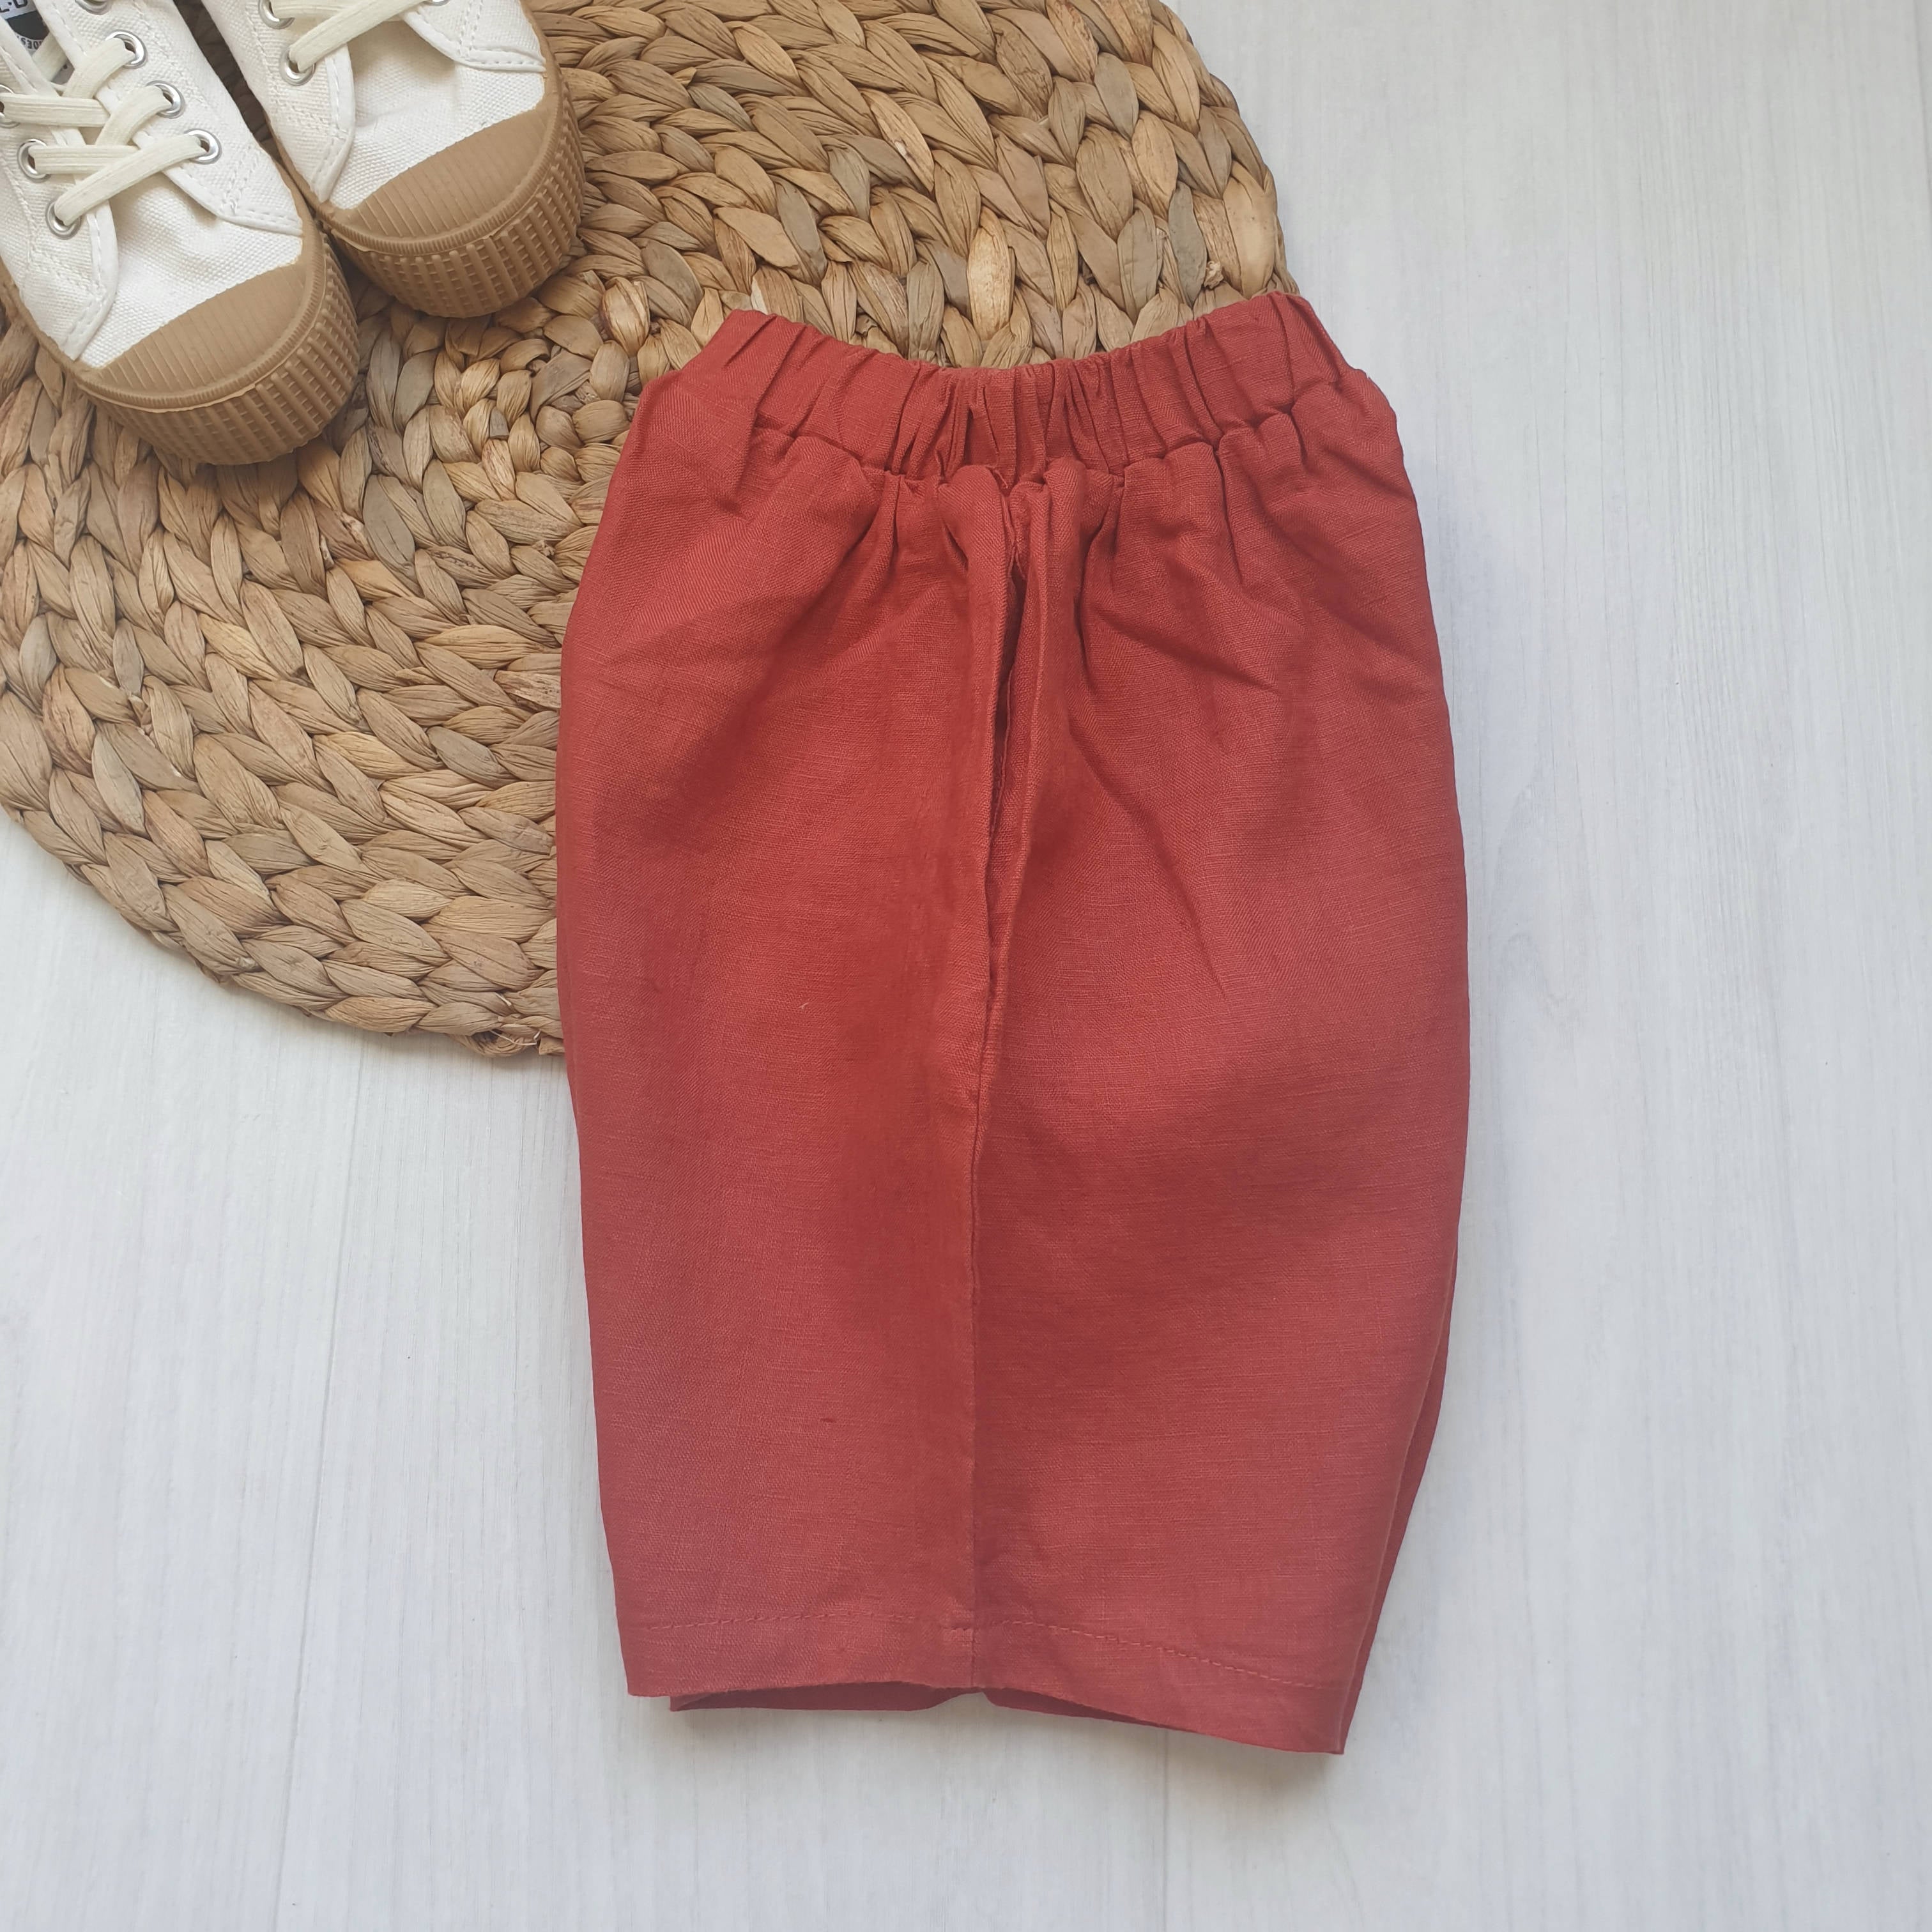 מכנסיים קצרים צבעוניים (אדום-כתום) - PaPeony